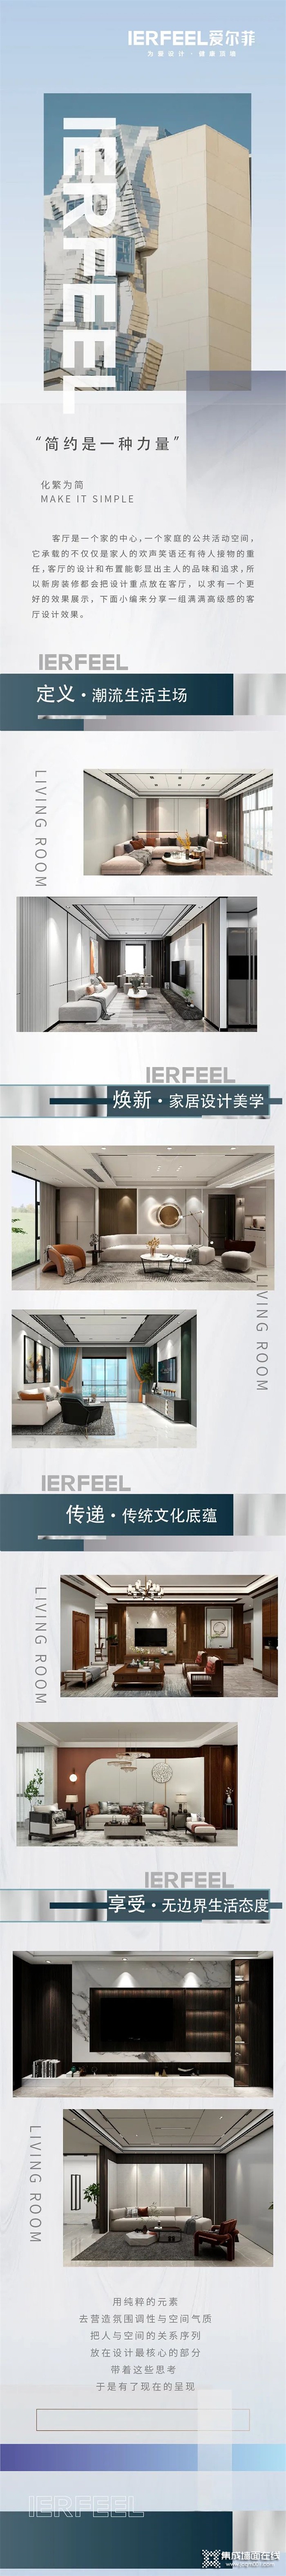 爱尔菲集成顶墙——2022客厅设计新趋势 满满的高级感